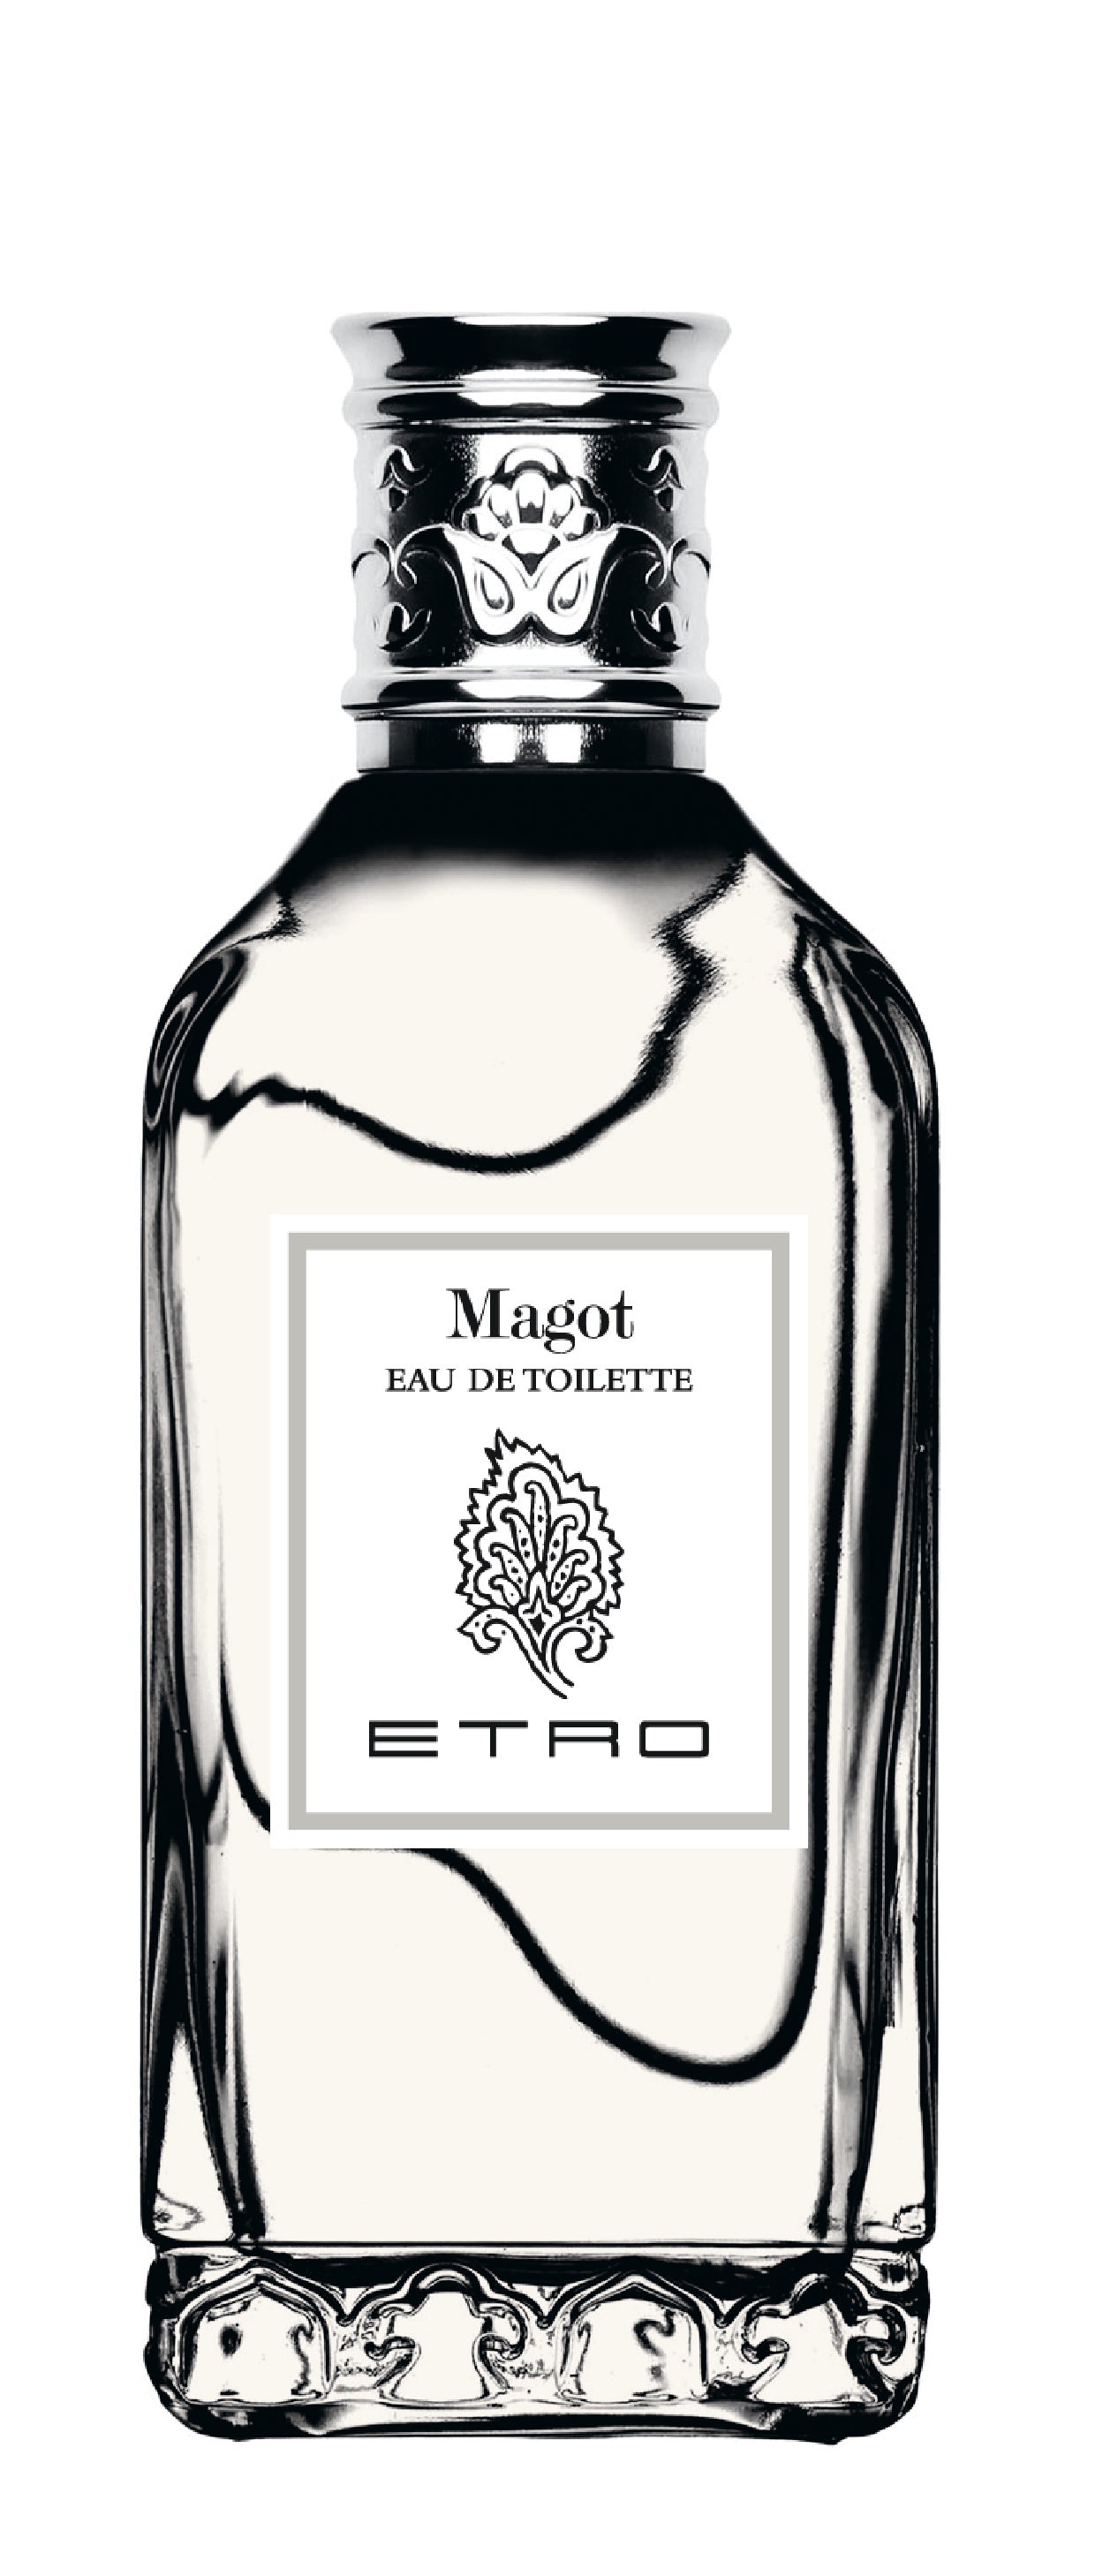 ETRO - MAGOT EAU DE TOILETTE